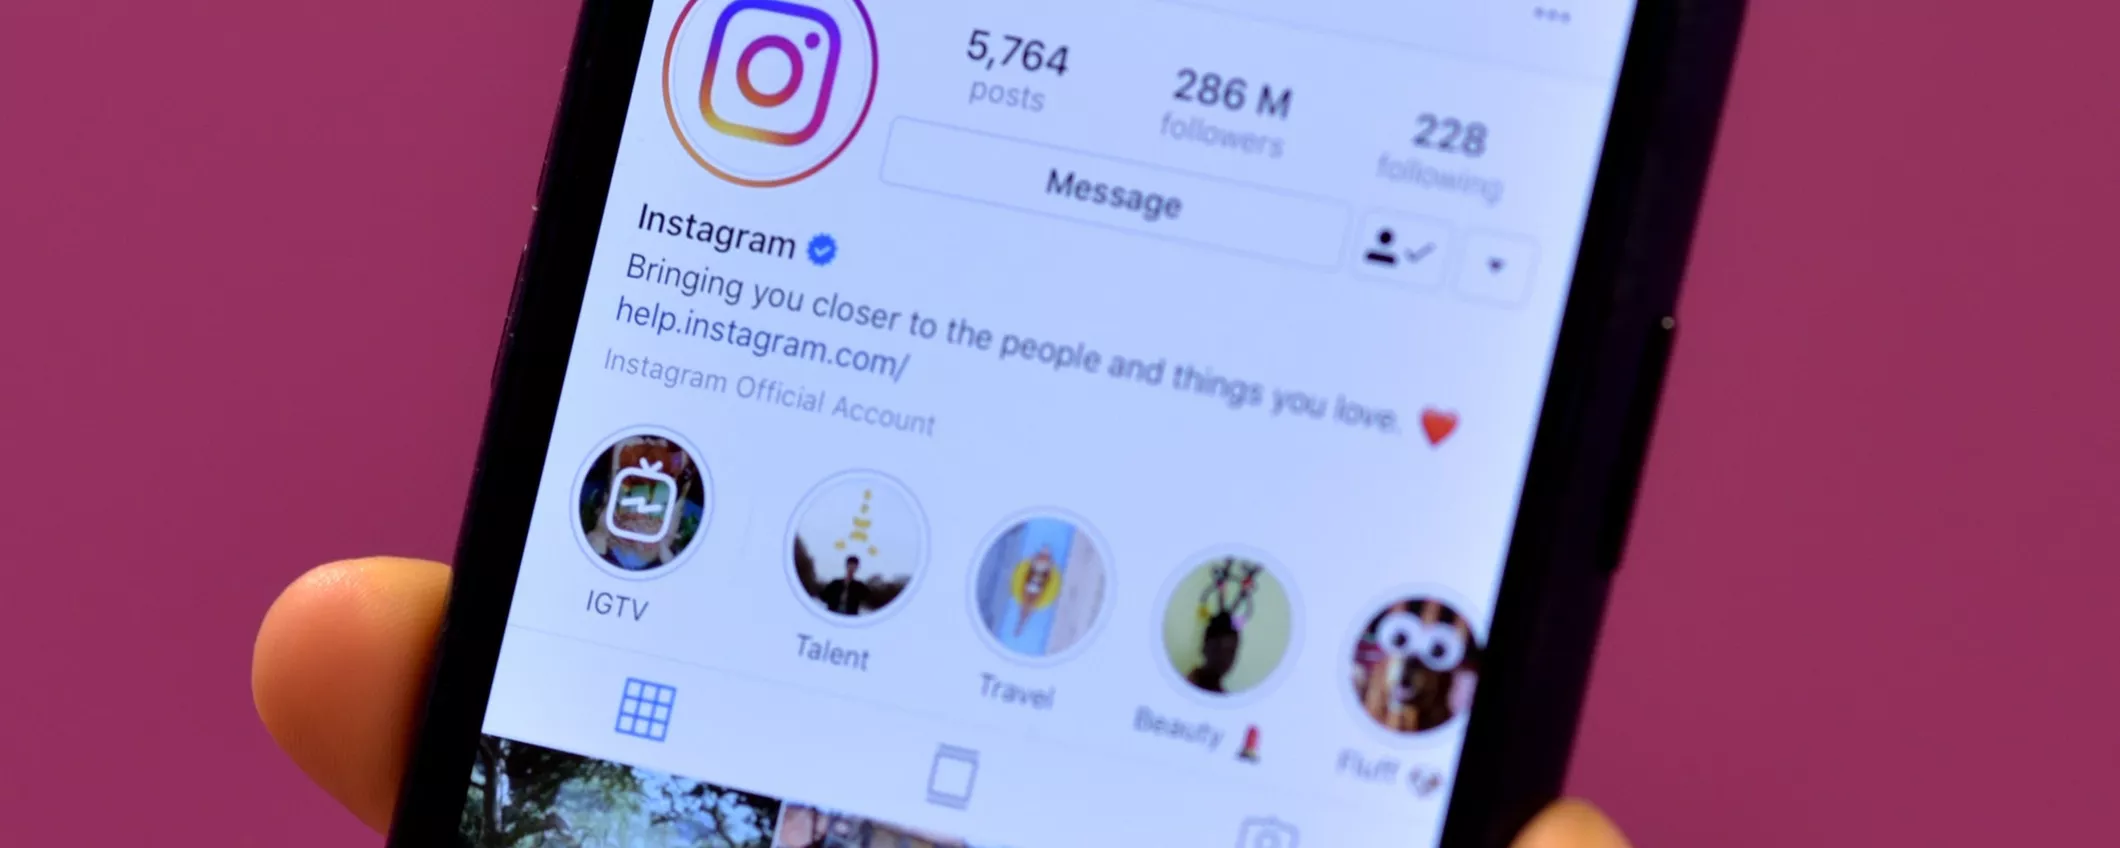 Instagram rende privati i nuovi account sotto i 18 anni